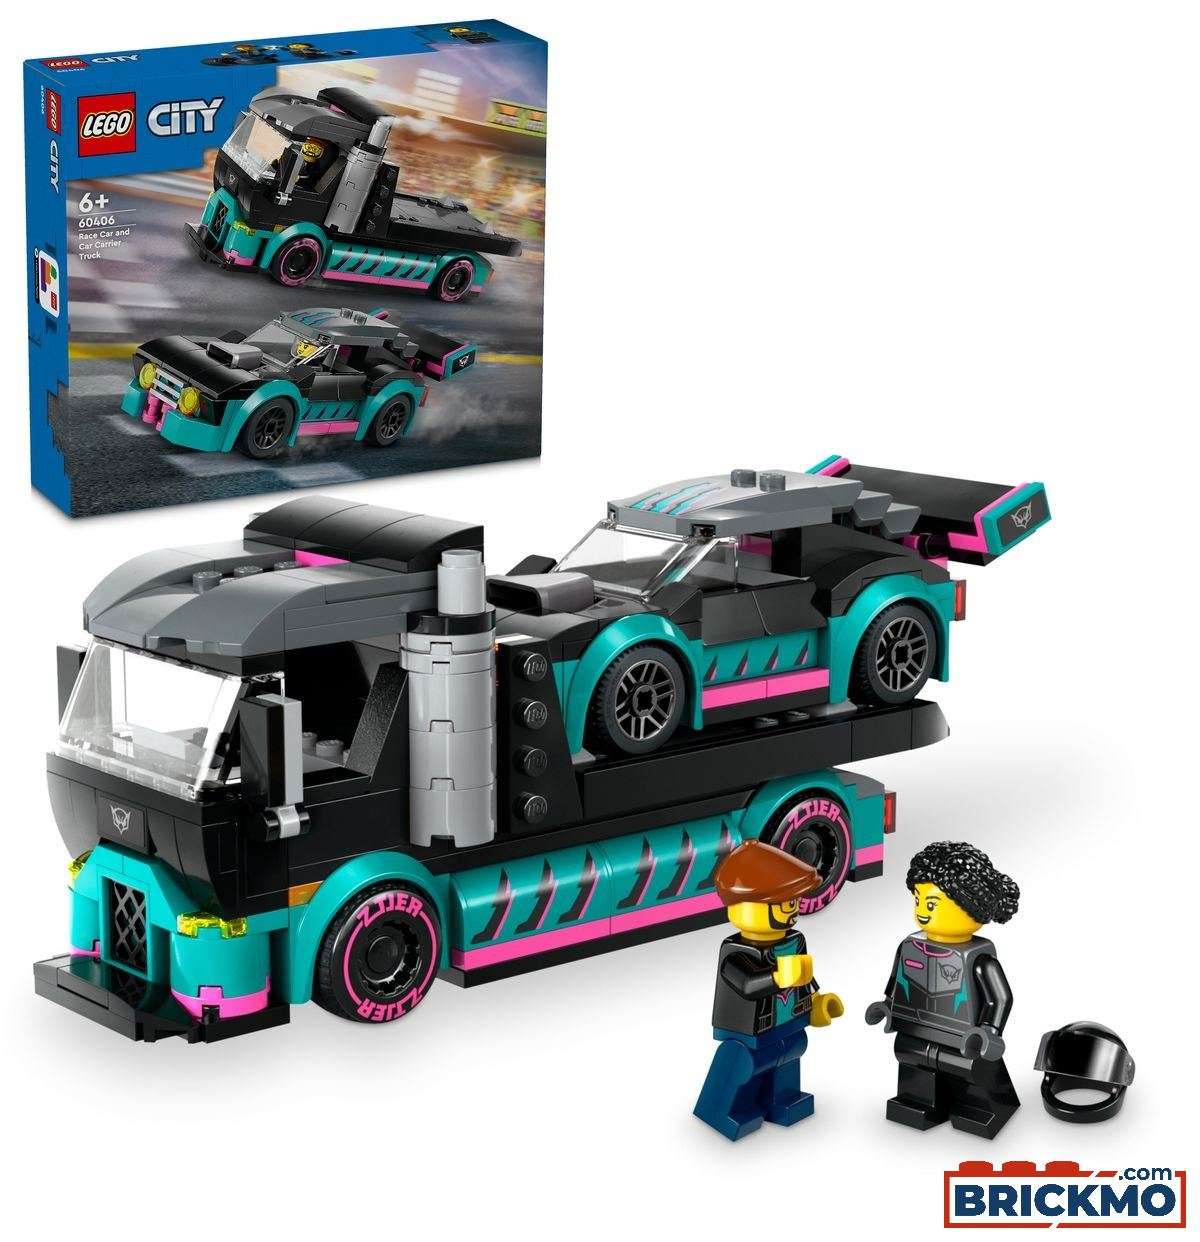 LEGO City 60406 Coche de Carreras y Camión de Transporte 60406